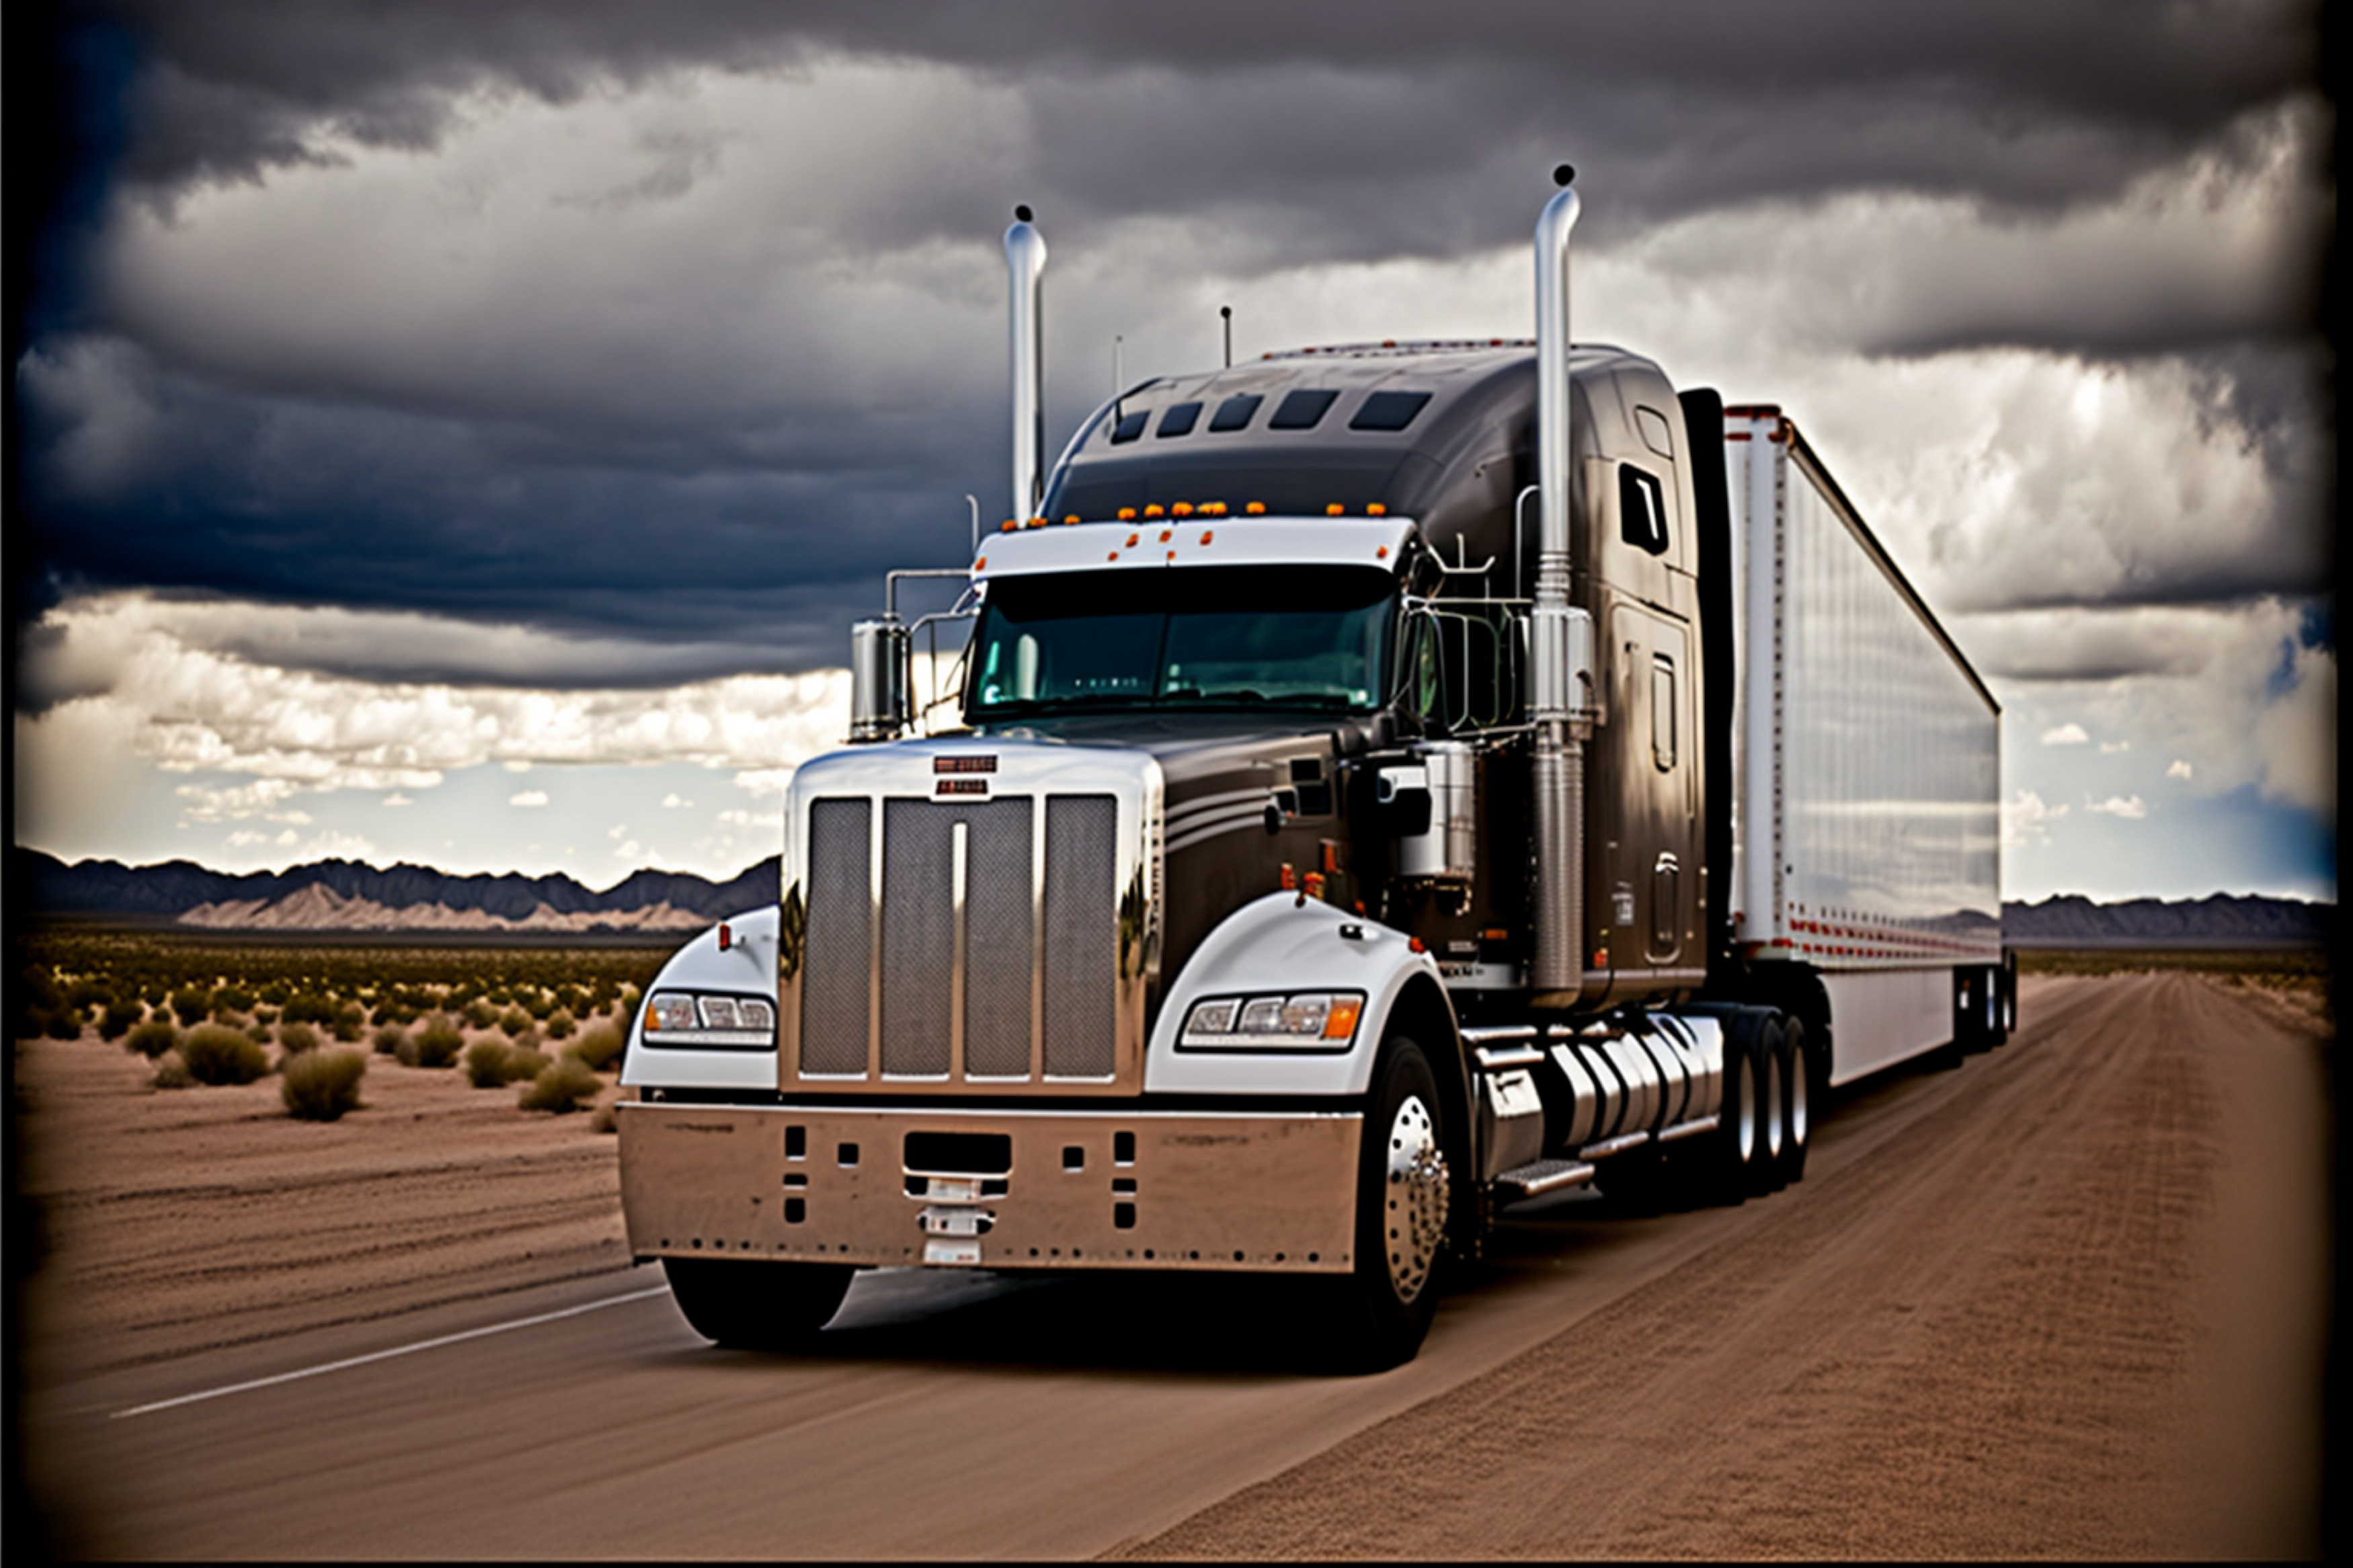 Local CDL Truck Driver Expert & Logistics Personnel Recruiters ClassATransport.com